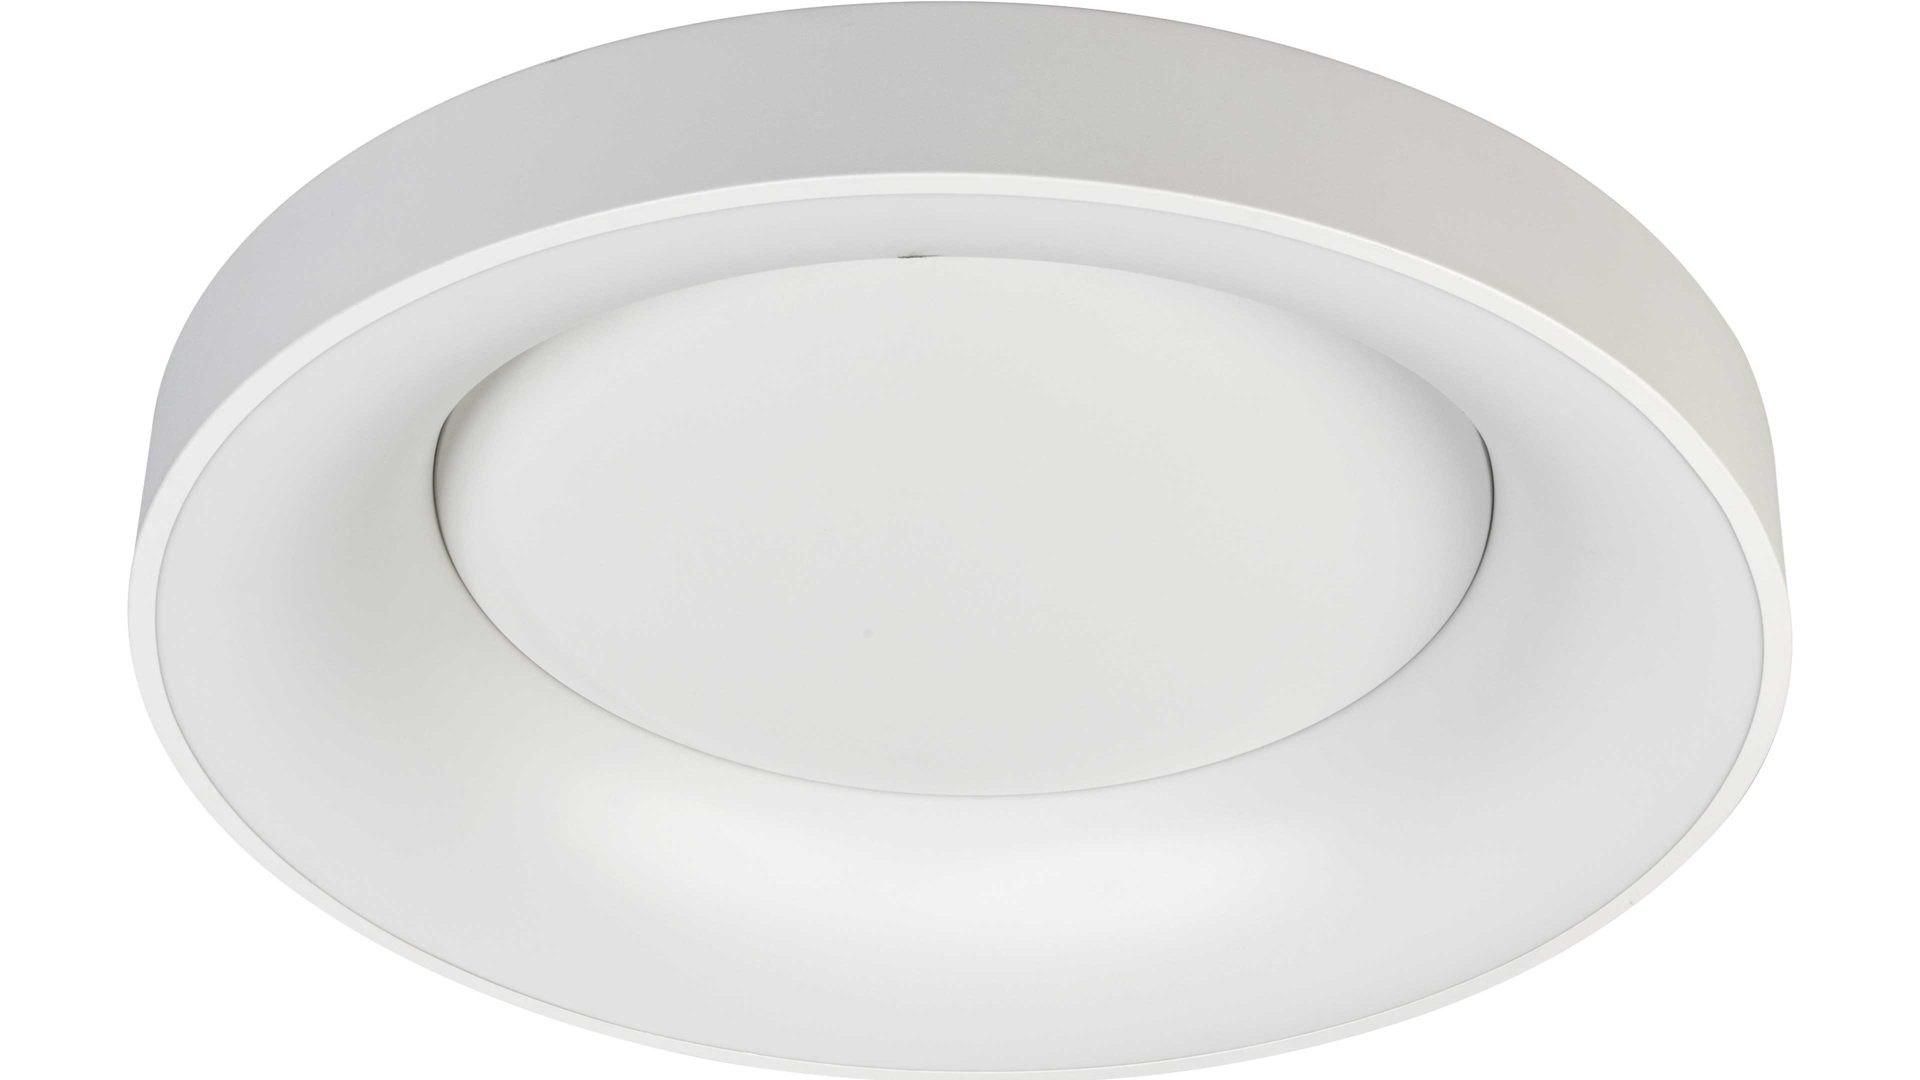 Deckenleuchte Wofi aus Kunststoff in Weiß LED-Deckenleuchte Cameron weißes Metall & weißer Kunststoff – Durchmesser ca. 78 cm